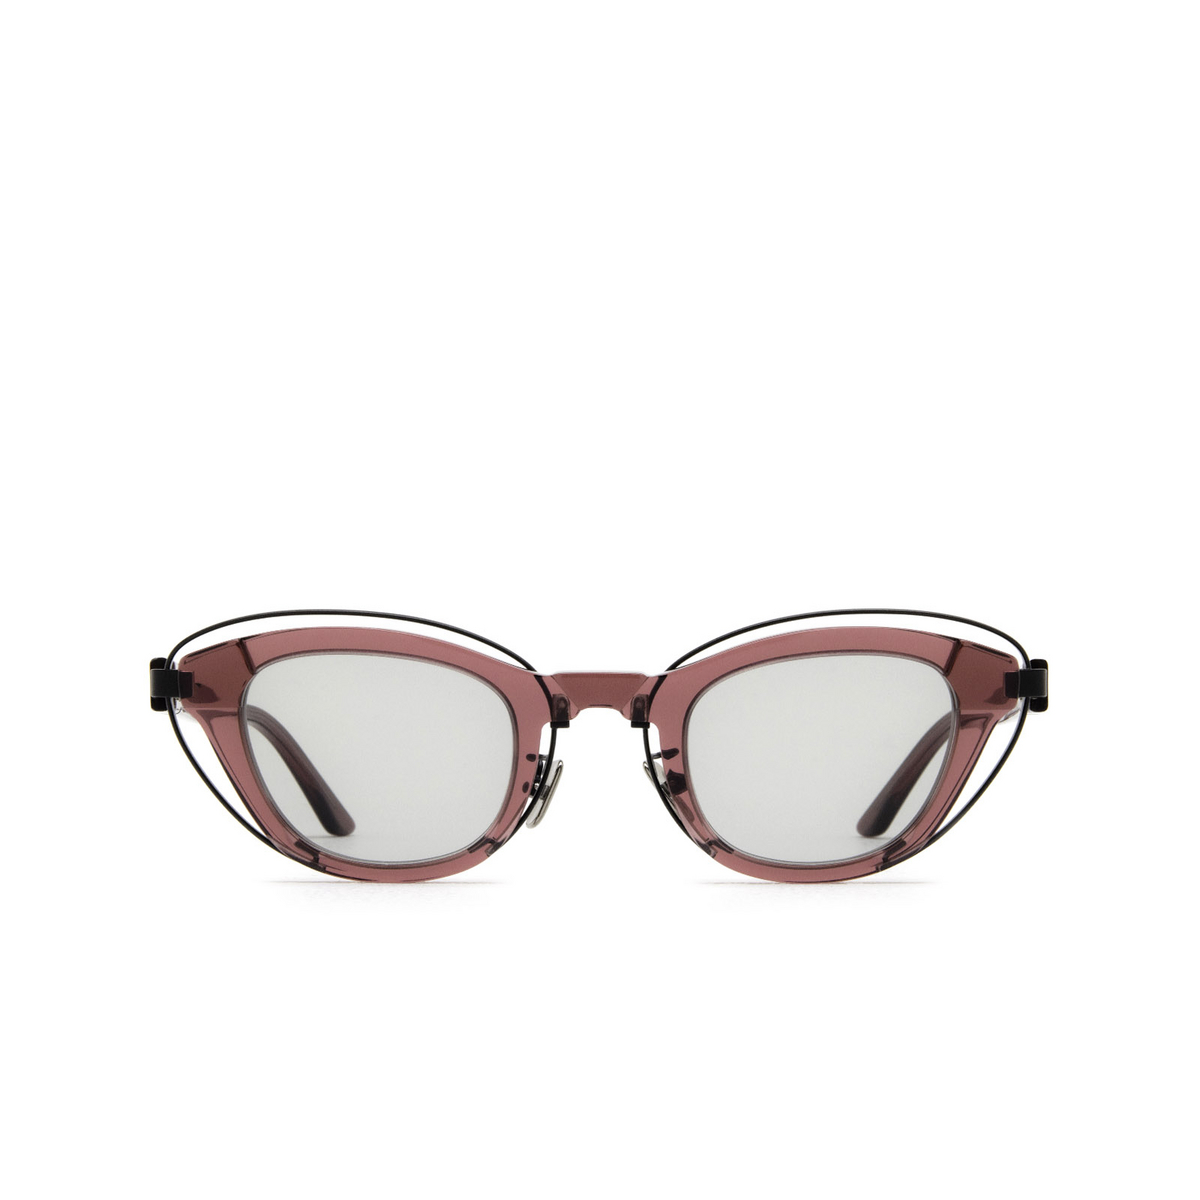 Kuboraum N11 Sunglasses CHE Cherry - front view